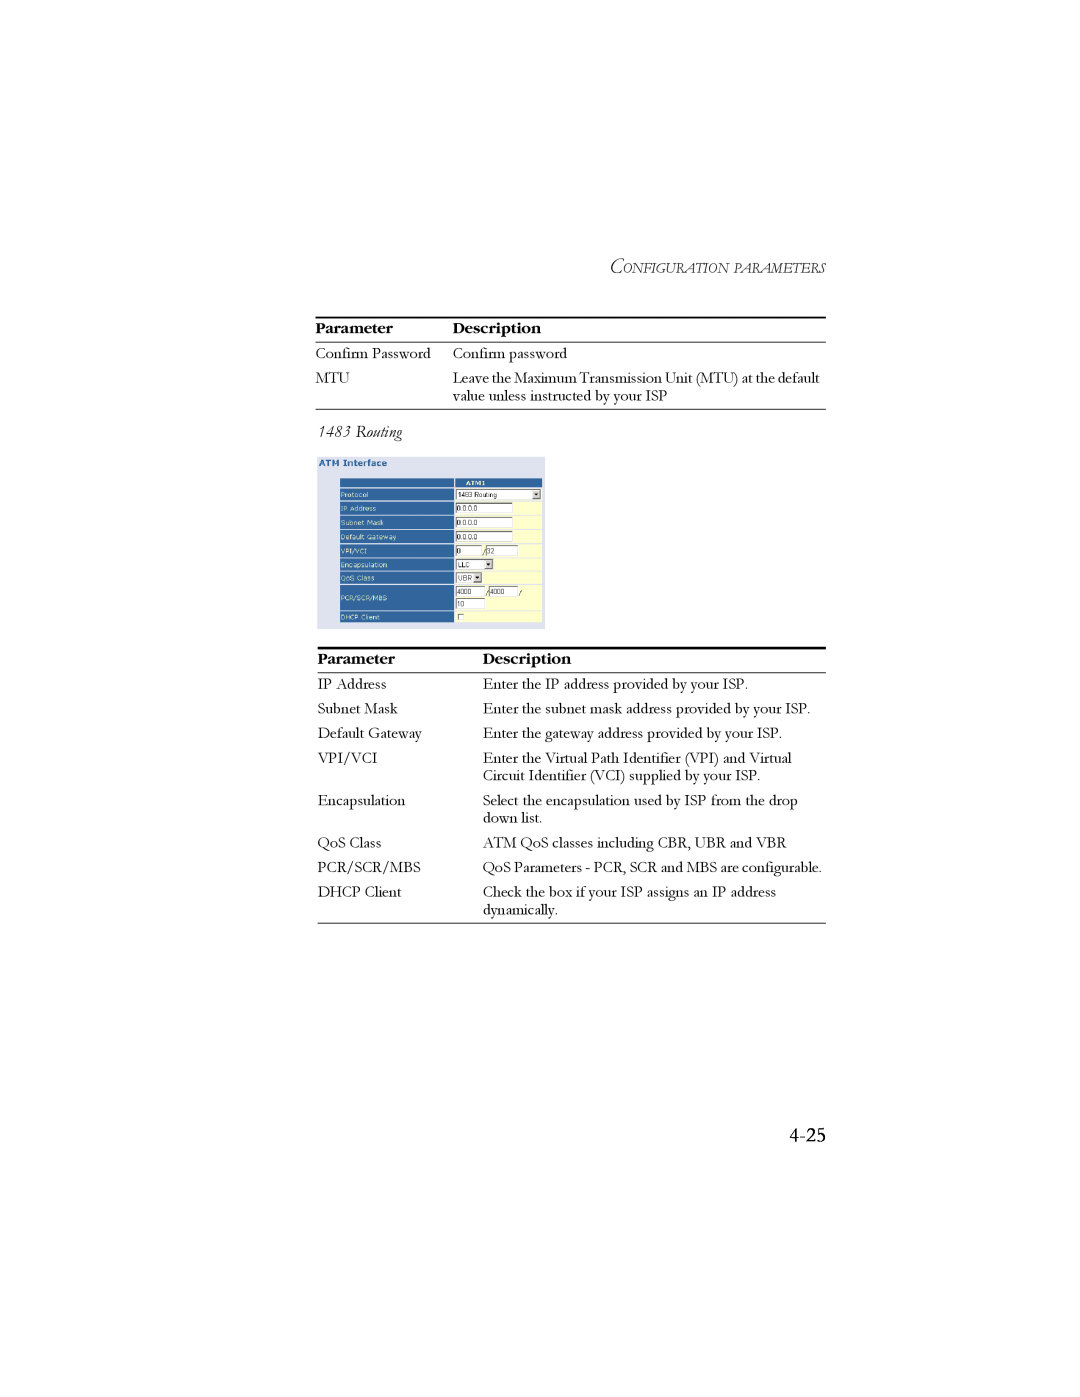 SMC Networks SMC7904BRB2 manual 4-25, Routing, Parameter, Description 